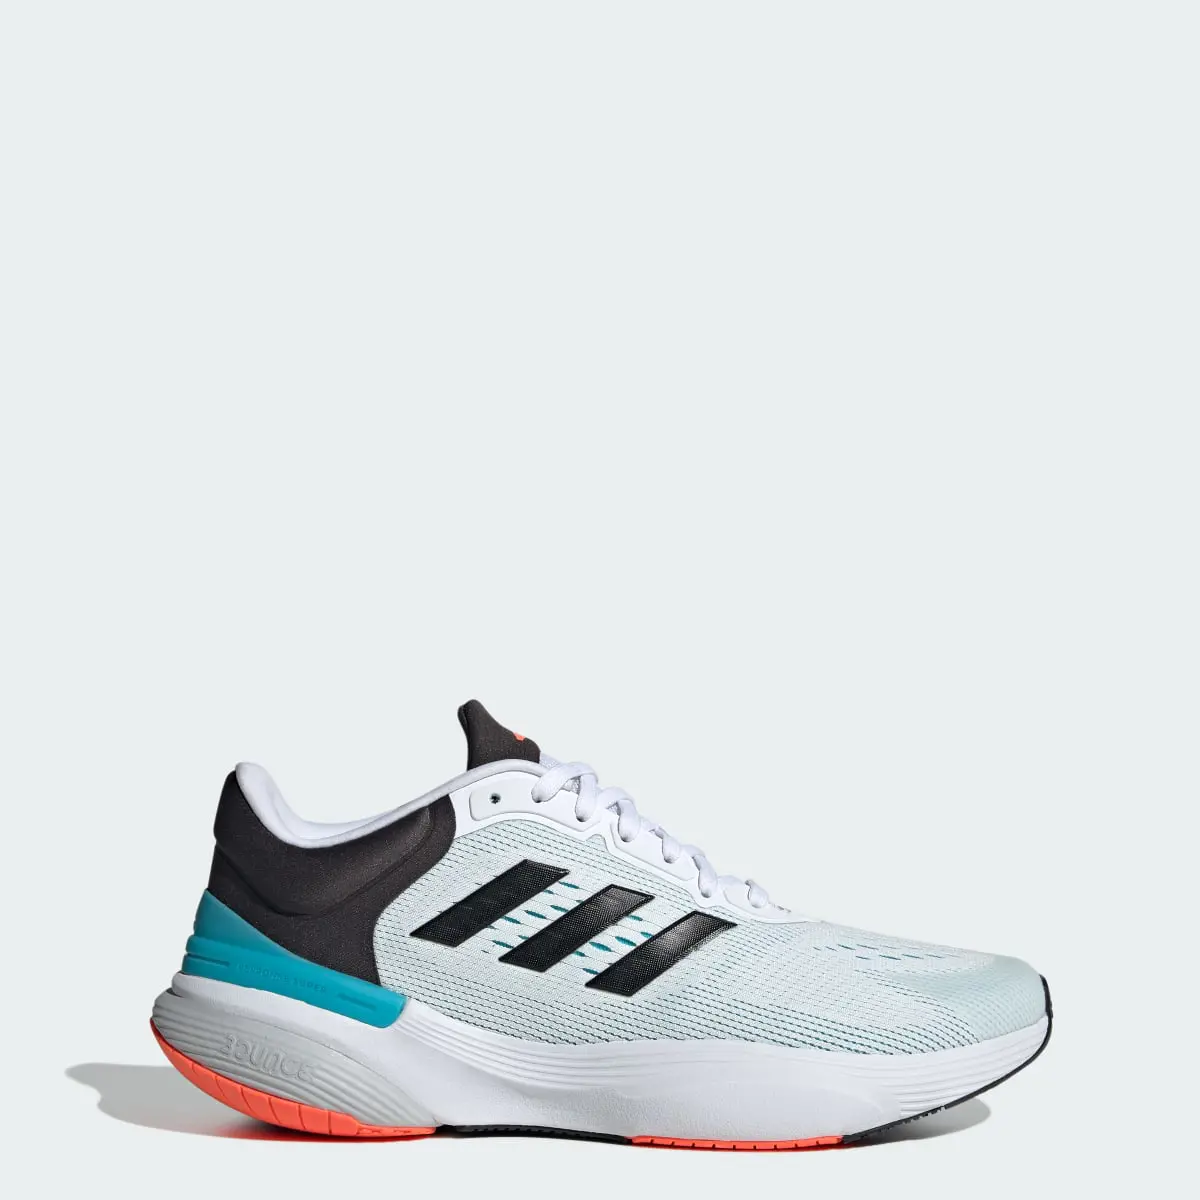 Adidas Response Super 2.0 Ayakkabı. 1